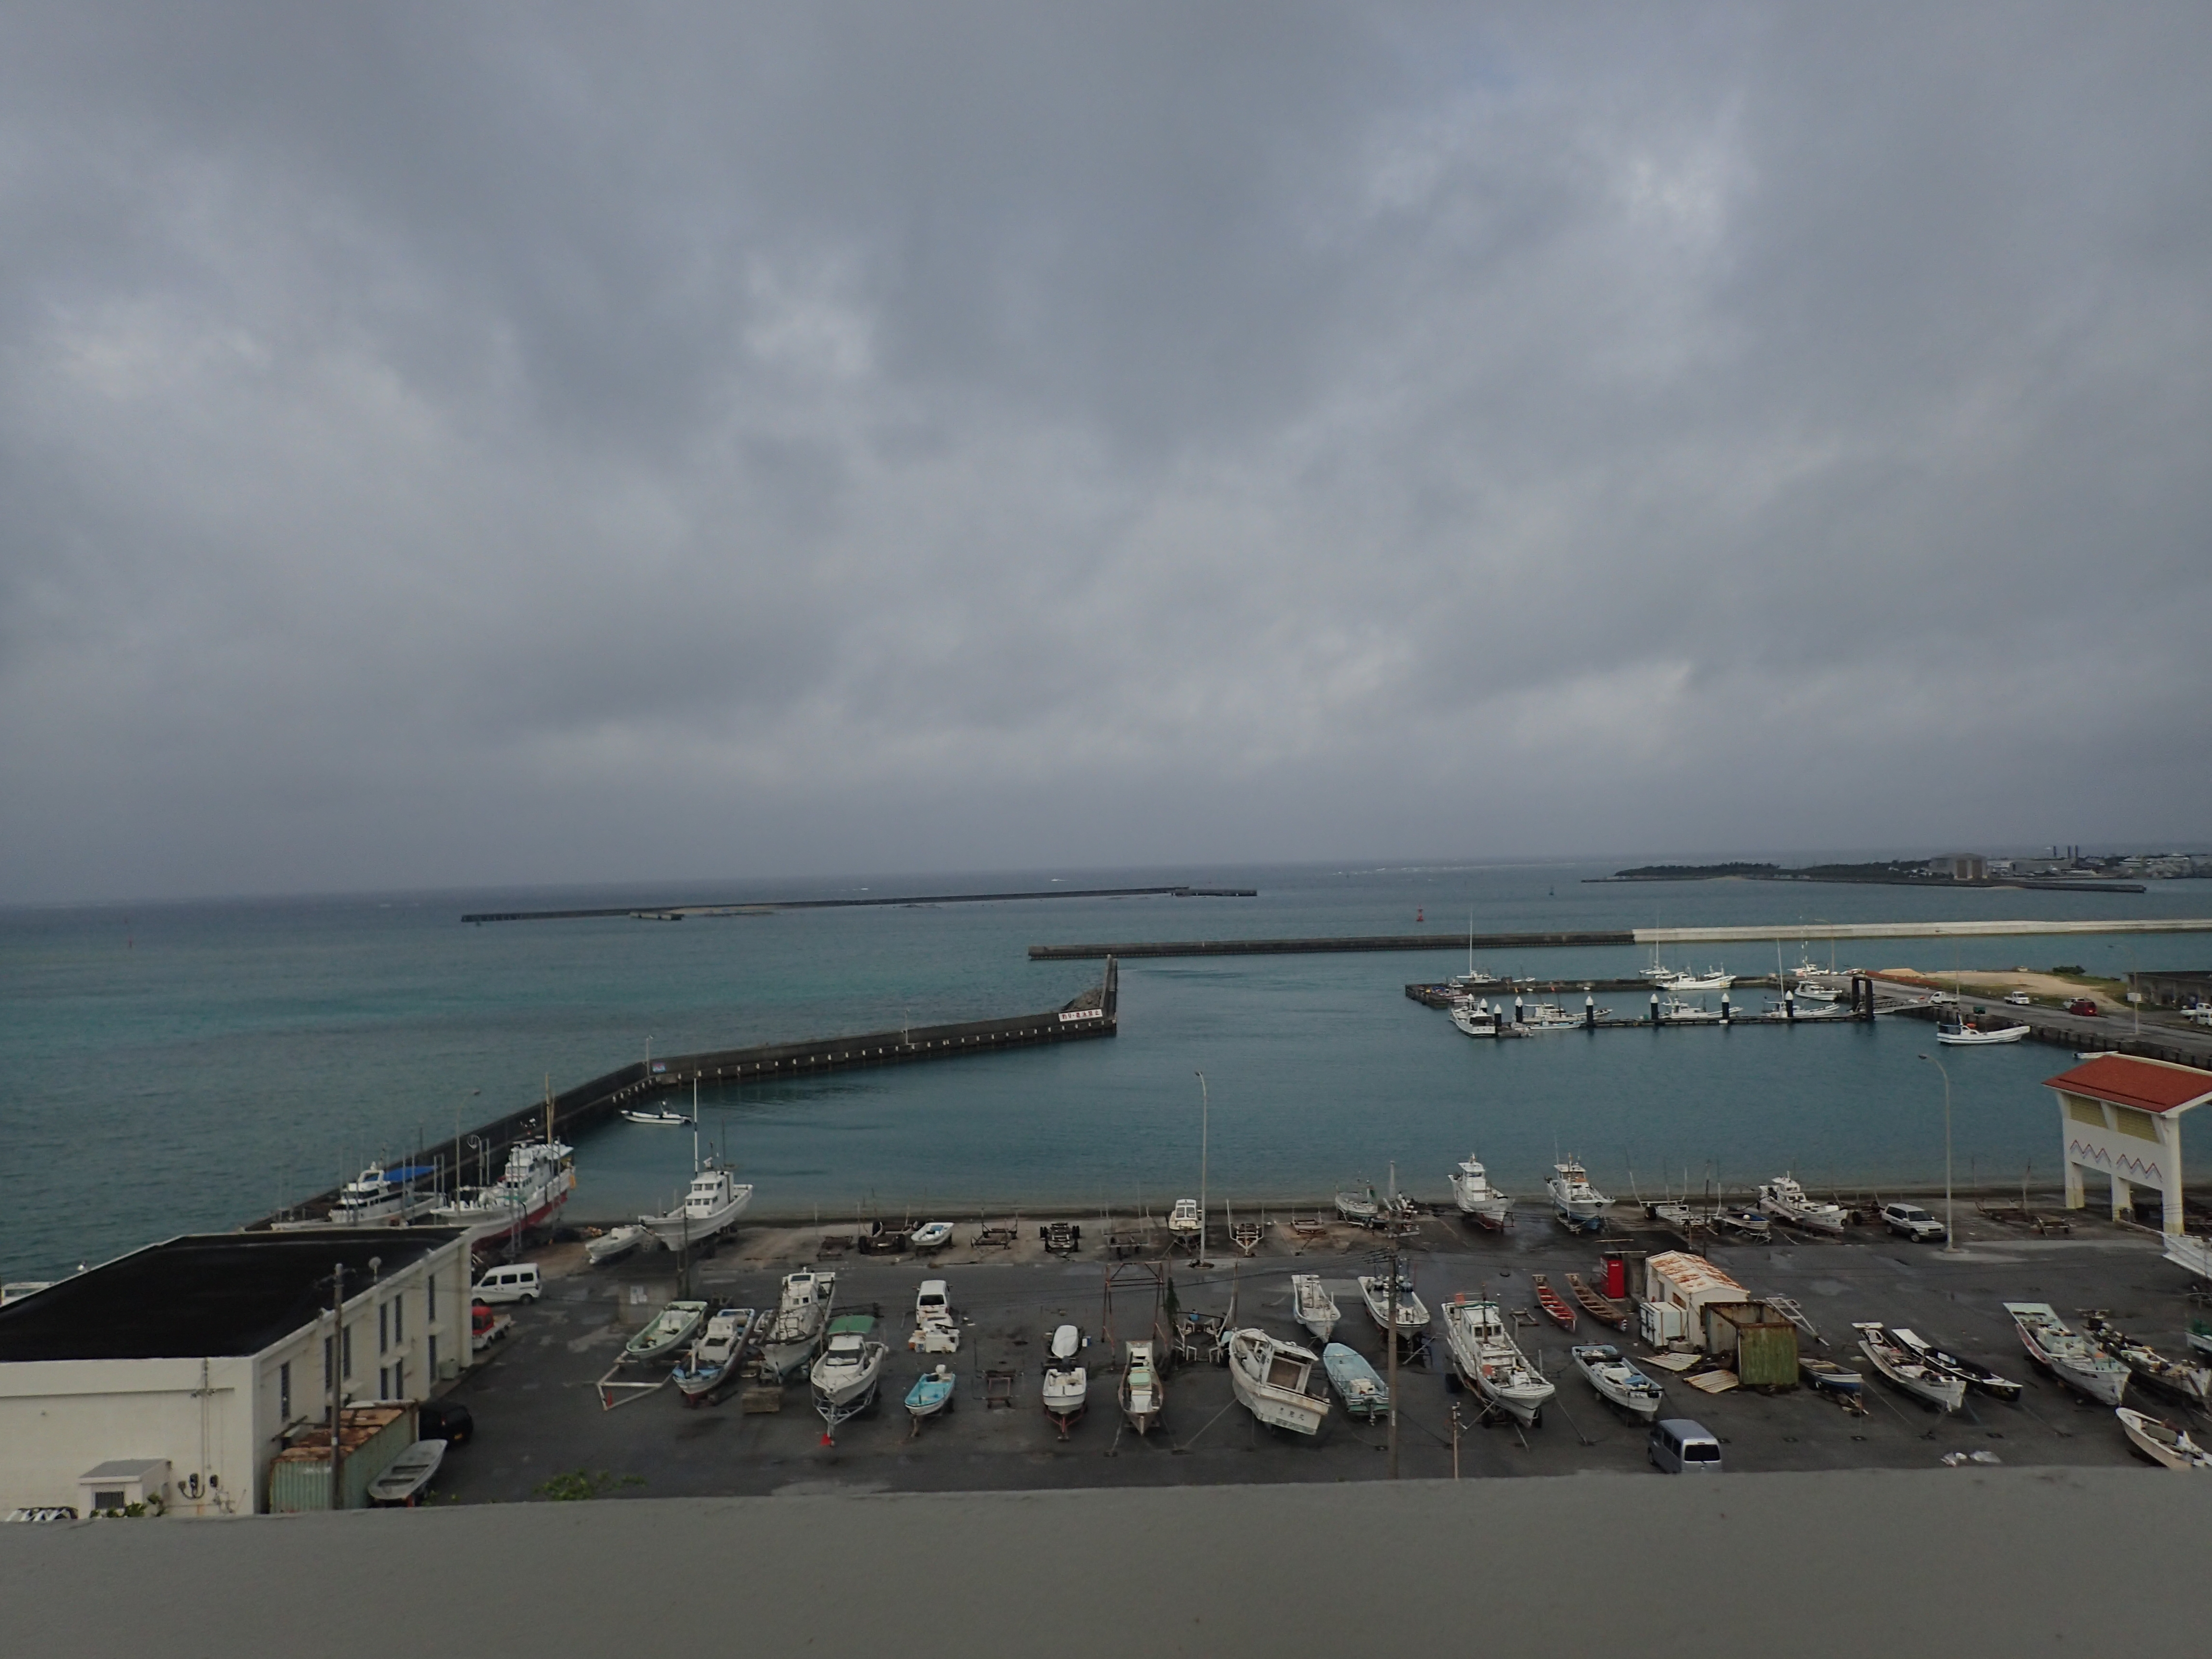 沖縄南部と渡嘉敷島の旅 とまりんから渡嘉敷島へ ミヤコるブログ